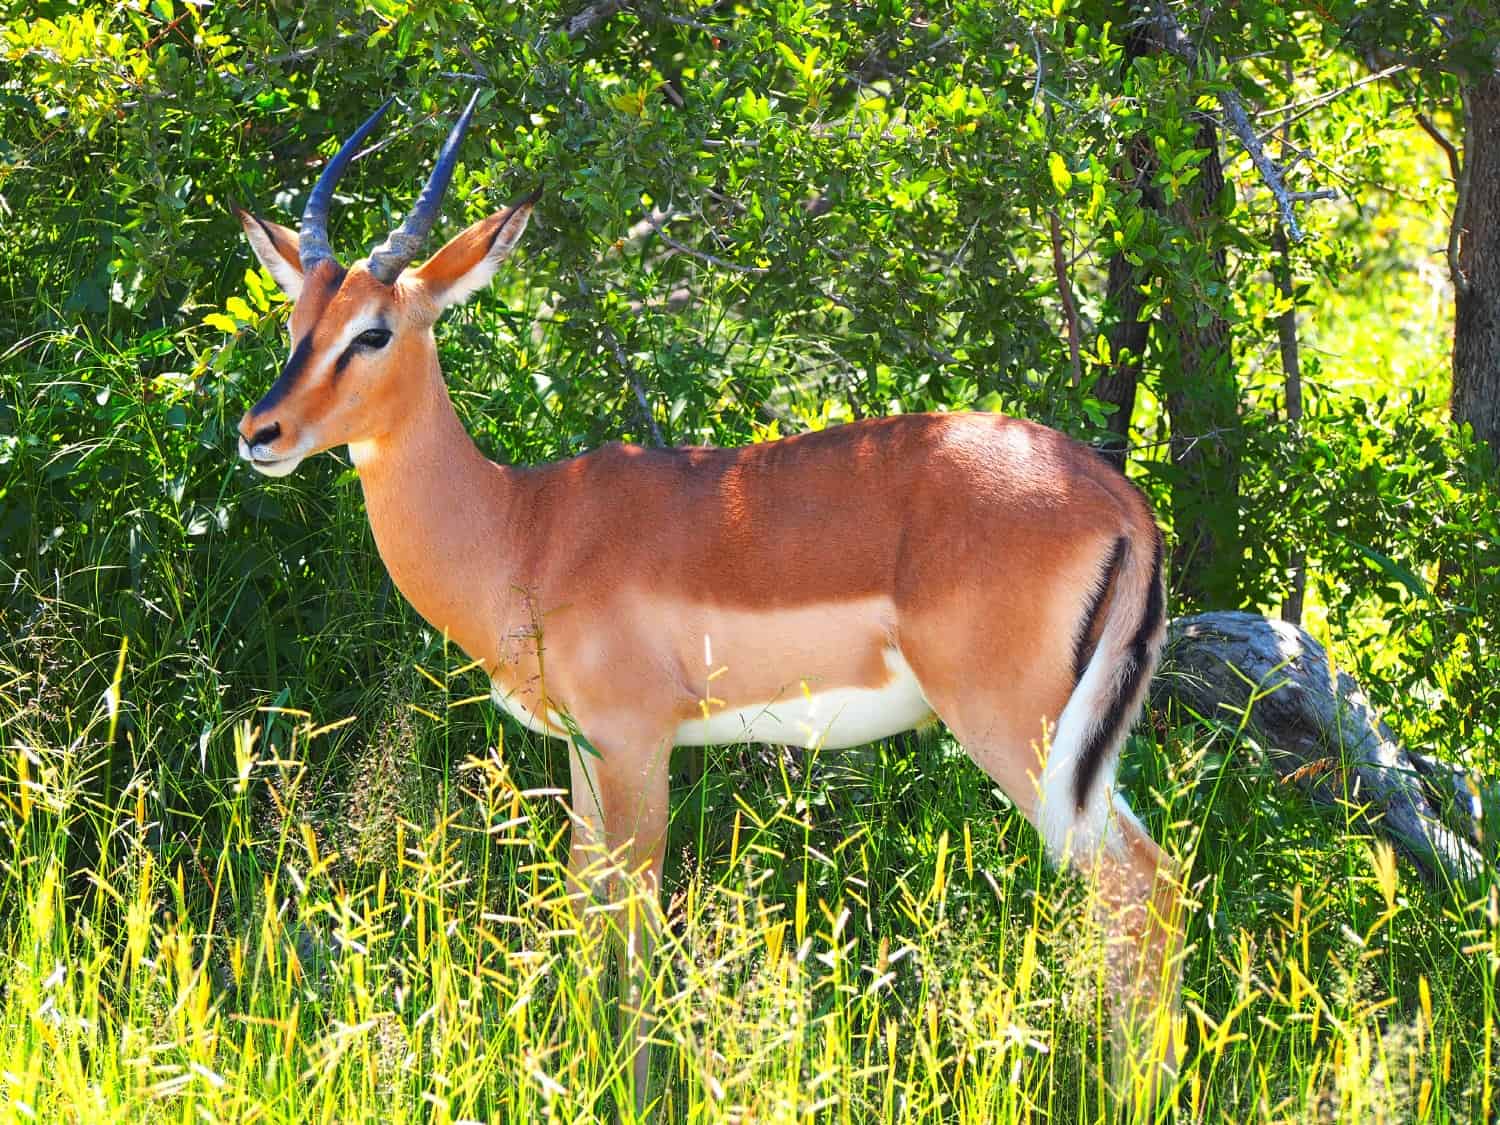 Impala at Etosha National Park